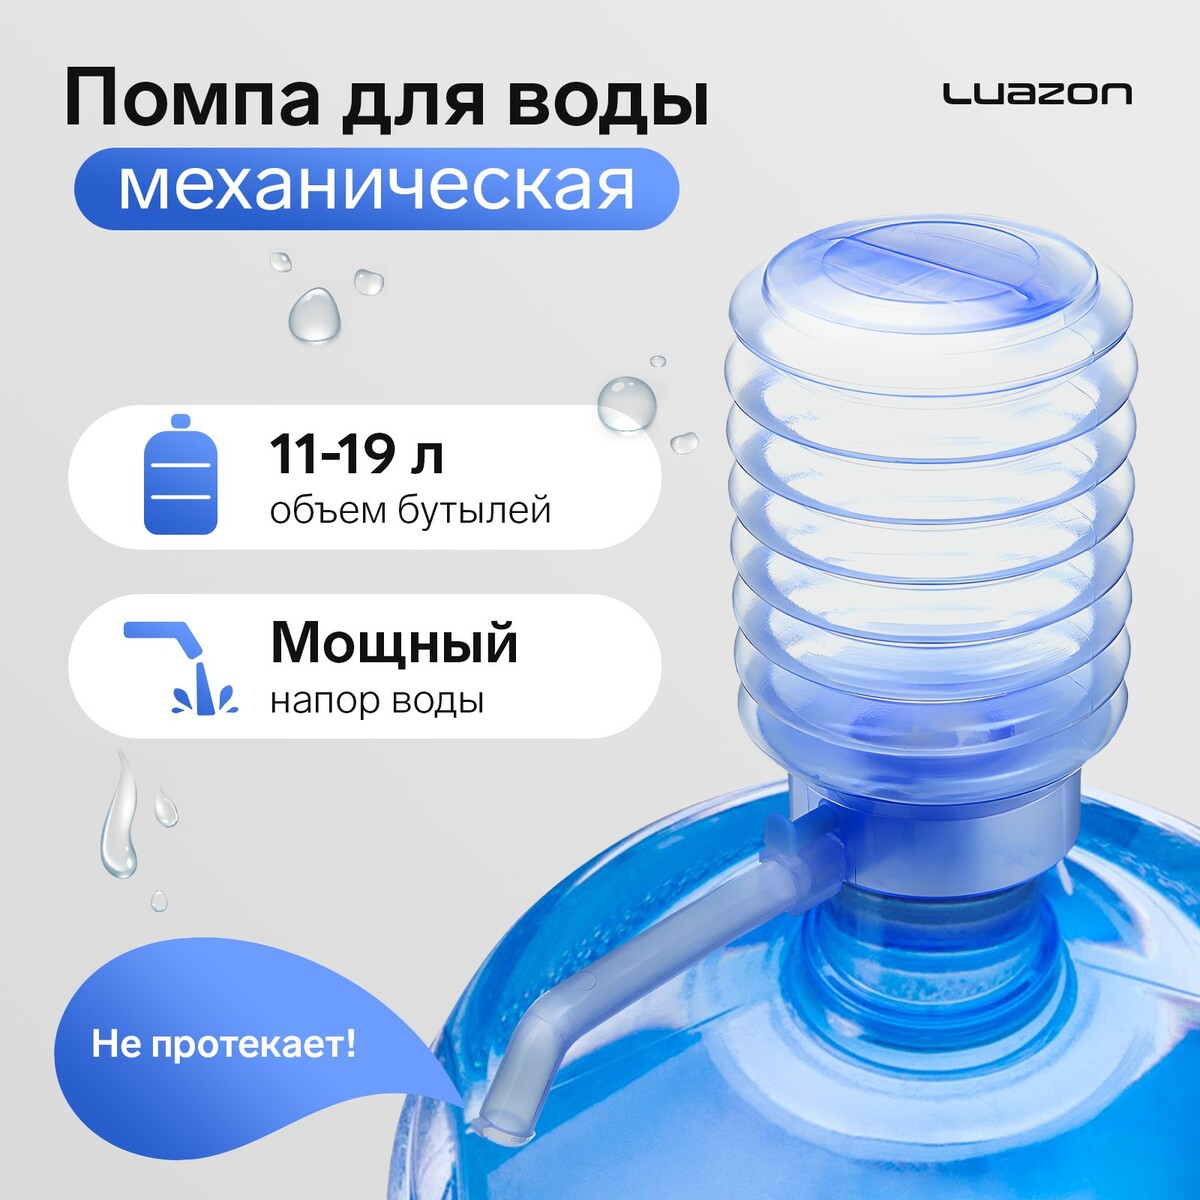 Помпа для воды luazon, механическая, прозрачная, под бутыль от 11 до 19 л, голубая помпа для воды luazon norma механическая большая под бутыль от 11 до 19 л голубая